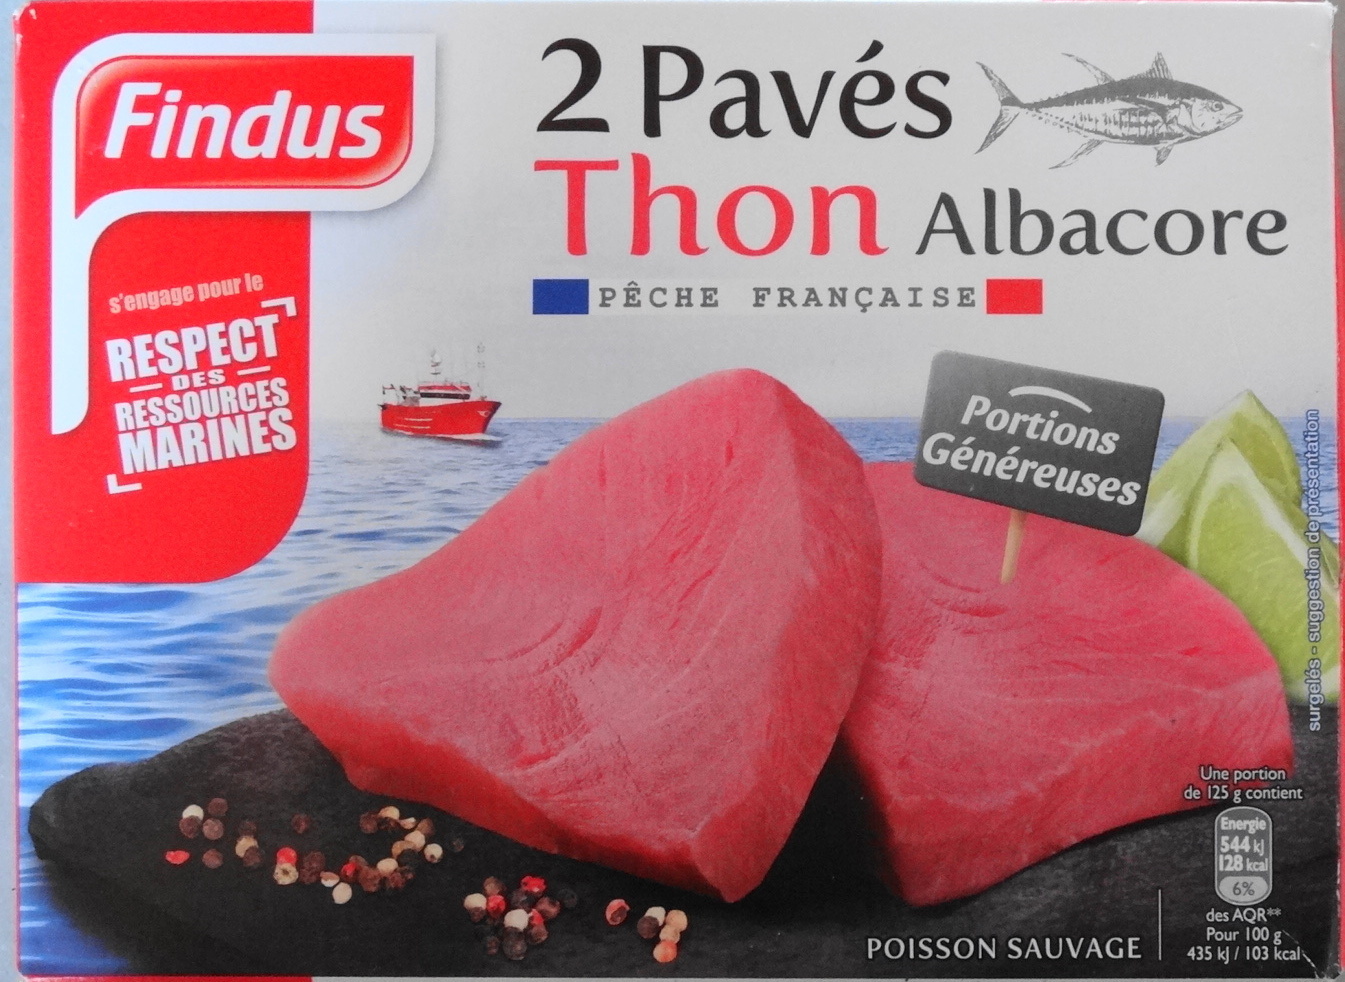 2 Pavés Thon Albacore - Product - fr